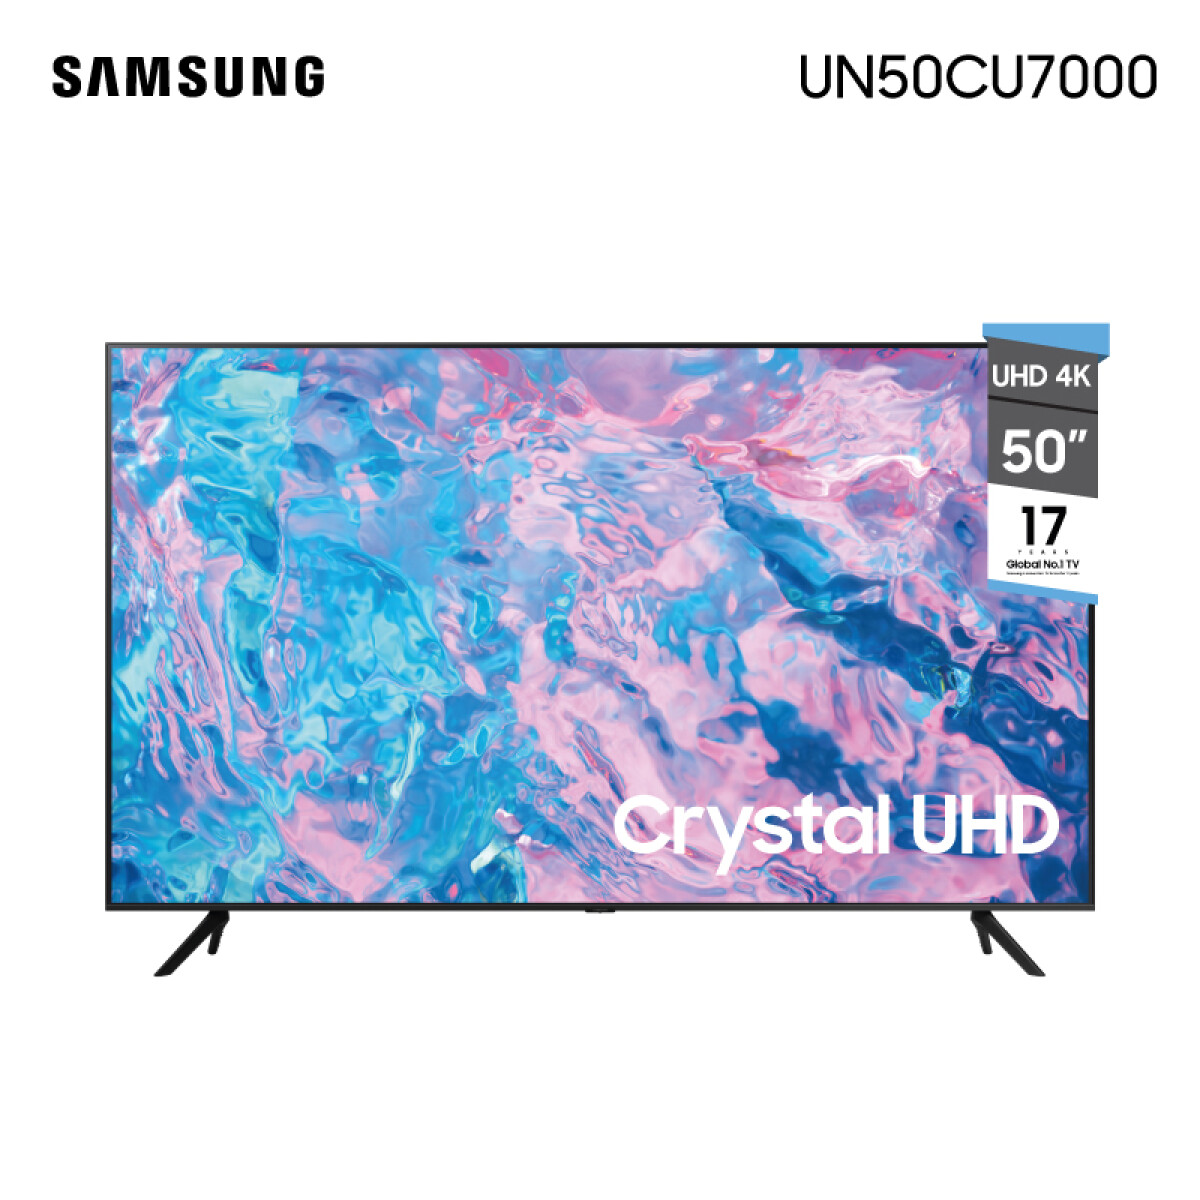 Led Smart Tv 50 Uhd 4K Samsung UN50CU7000 - 001 